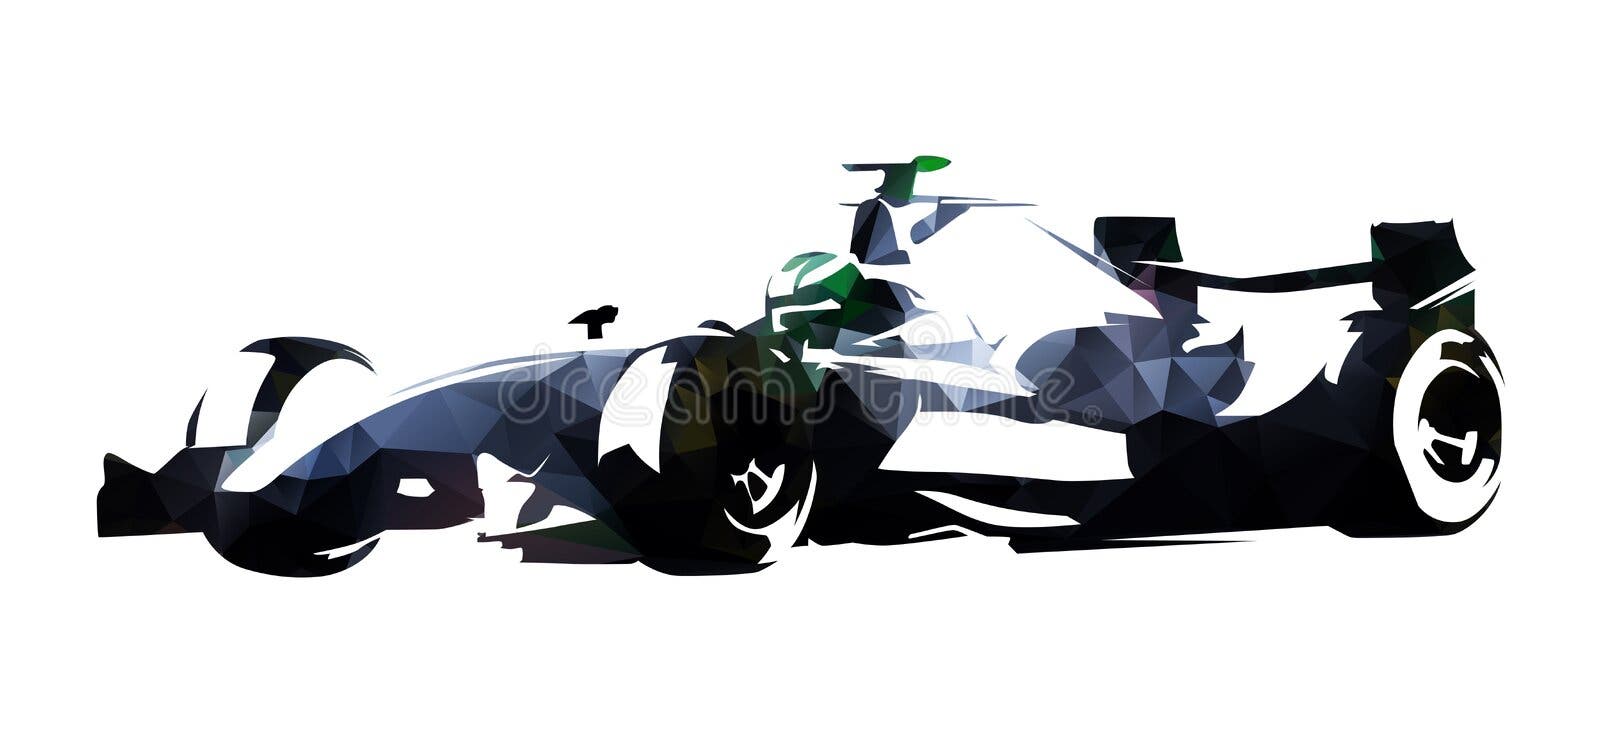 Fórmula De Corrida De Carros Alcança Em Circuito De Corrida a Ilustração De  Desenho Animado Da Linha De Chegada Para Ganhar O Camp Ilustração do Vetor  - Ilustração de velocidade, desempenho: 251839782